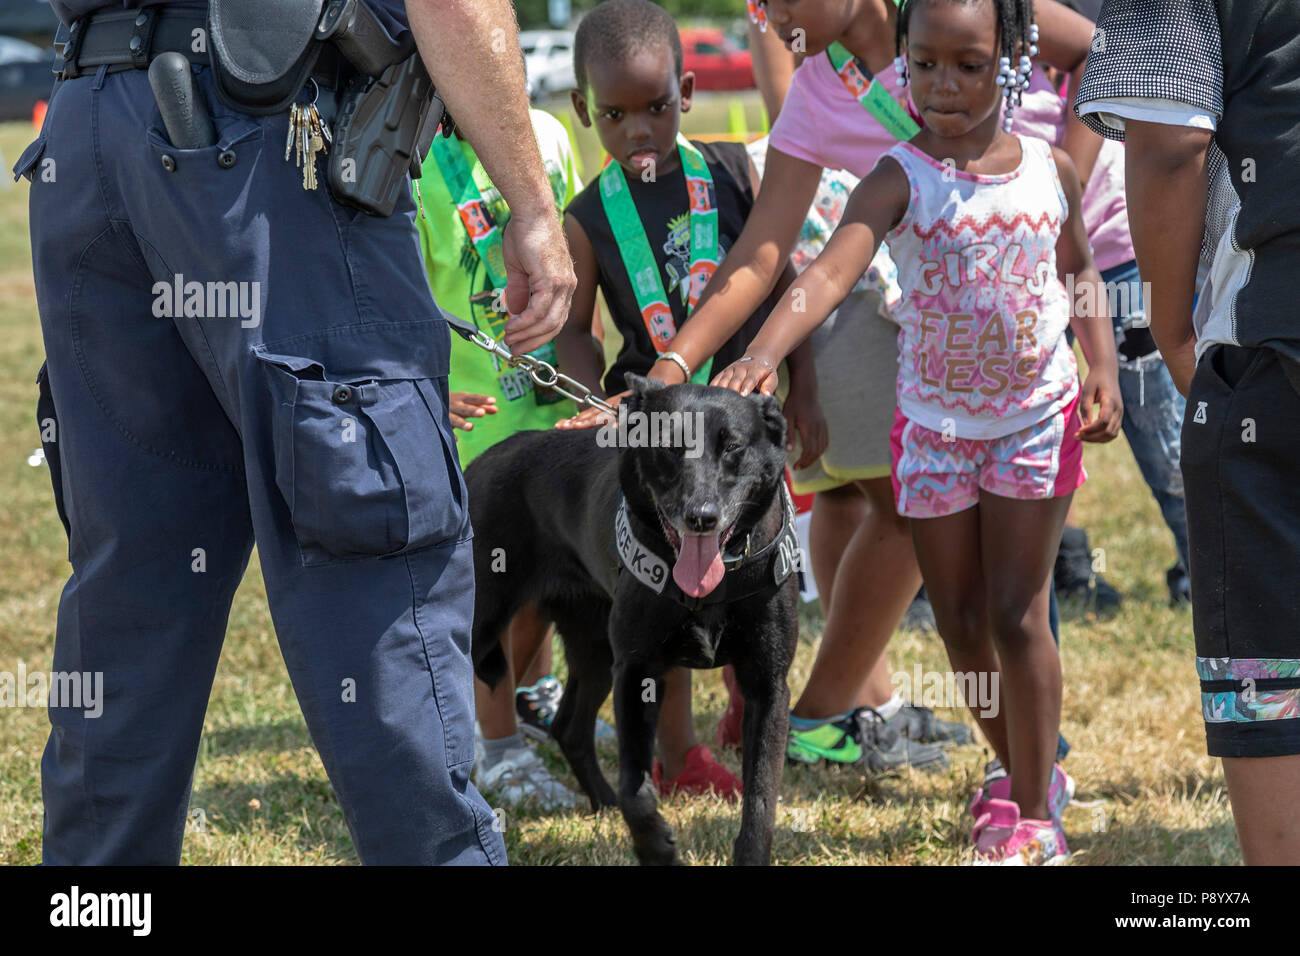 Detroit, Michigan - UN U.S. Customs and Border Protection officer montre son chien, Buddy, aux enfants à la Metro Detroit de la jeunesse. Buddy est formé pour det Banque D'Images